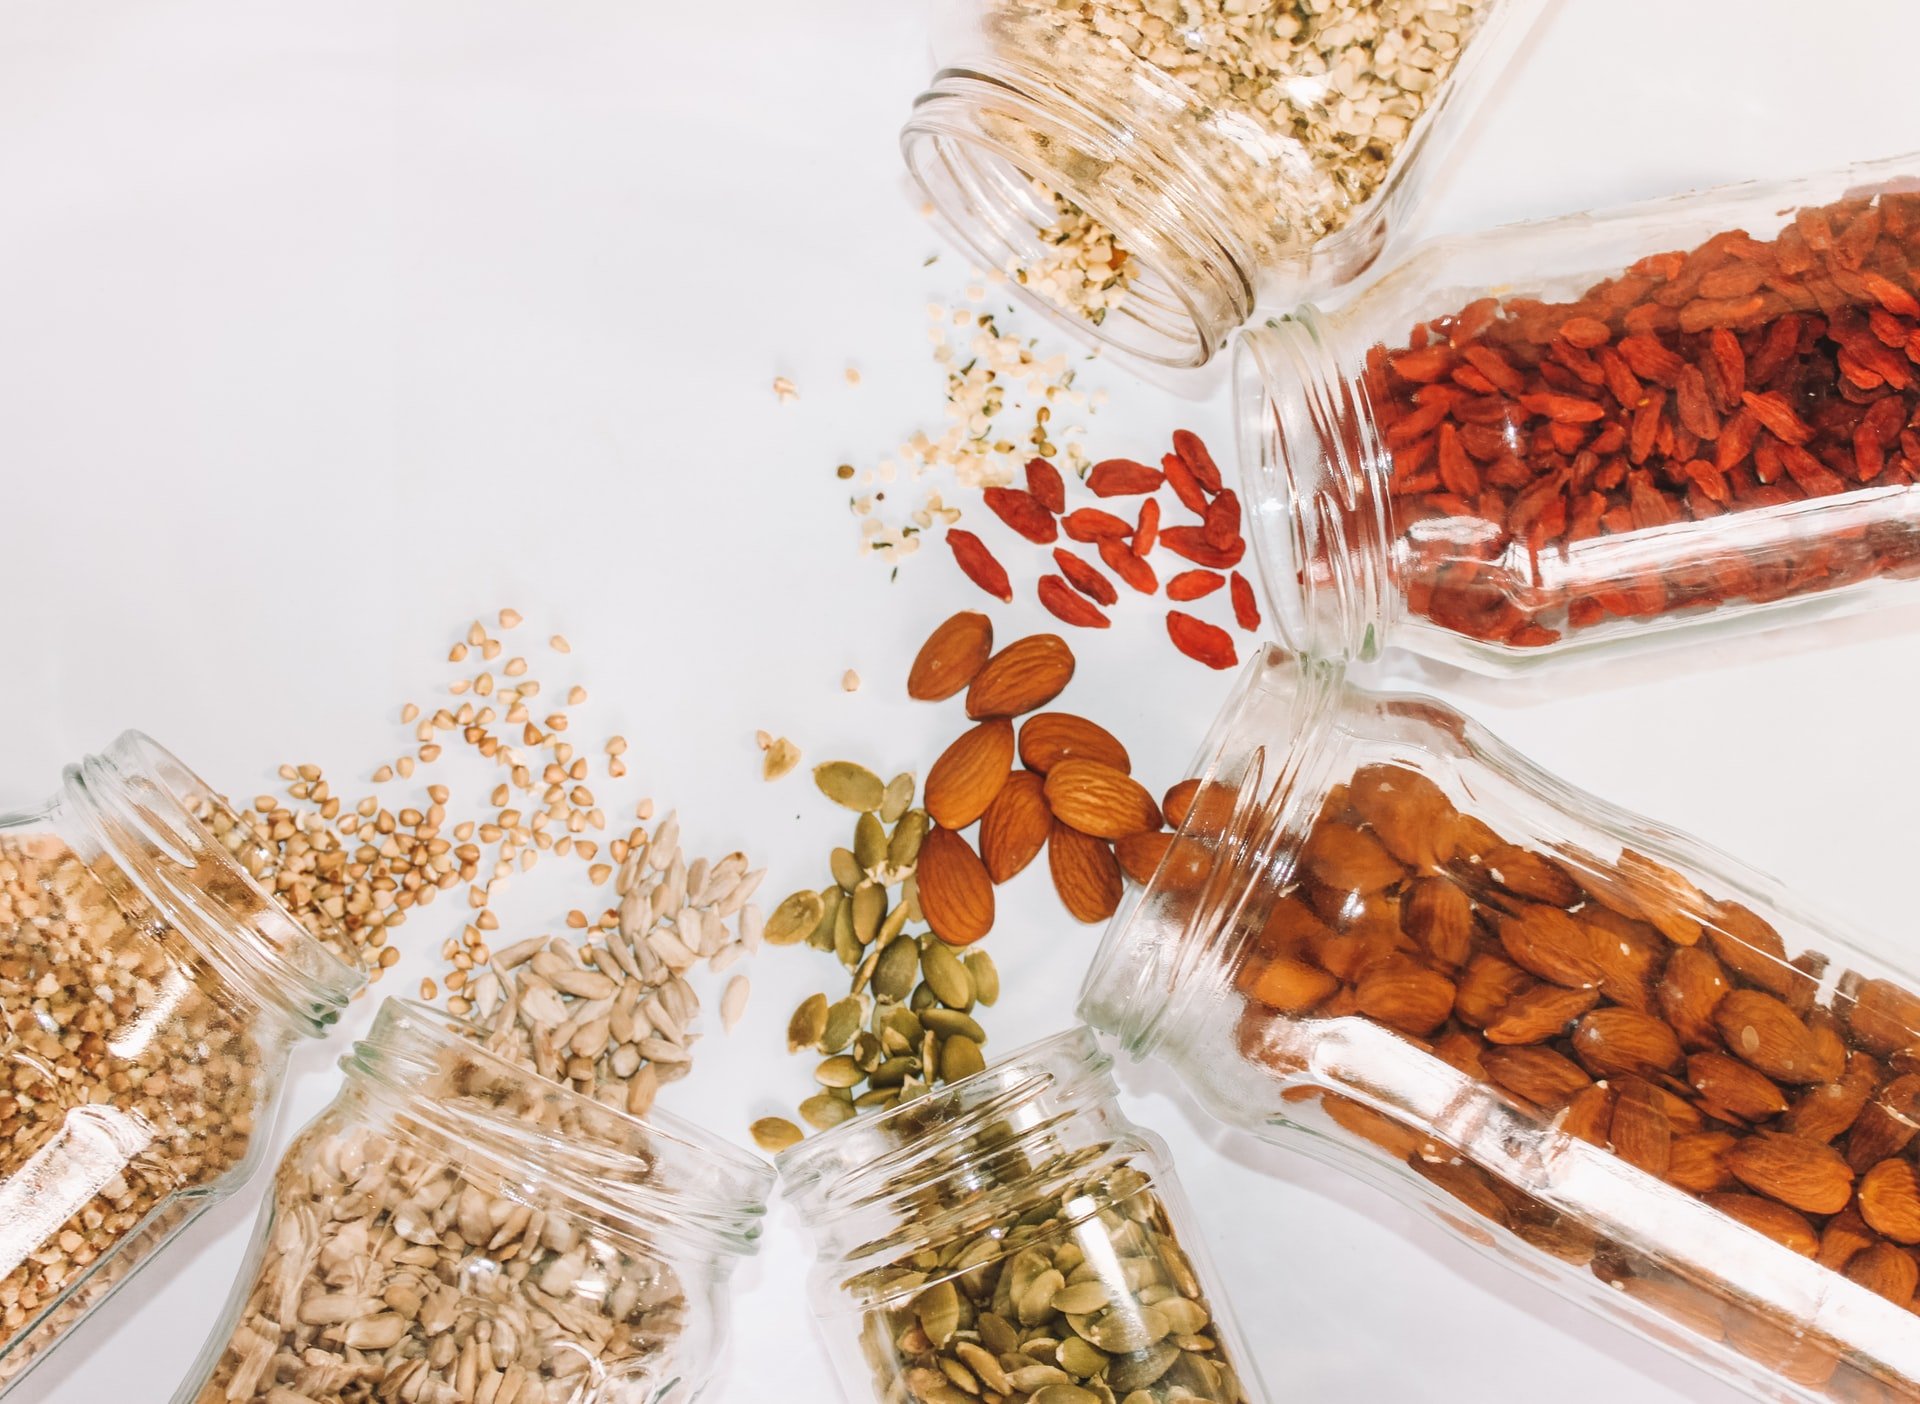 7 bonnes raisons de manger des graines de chia